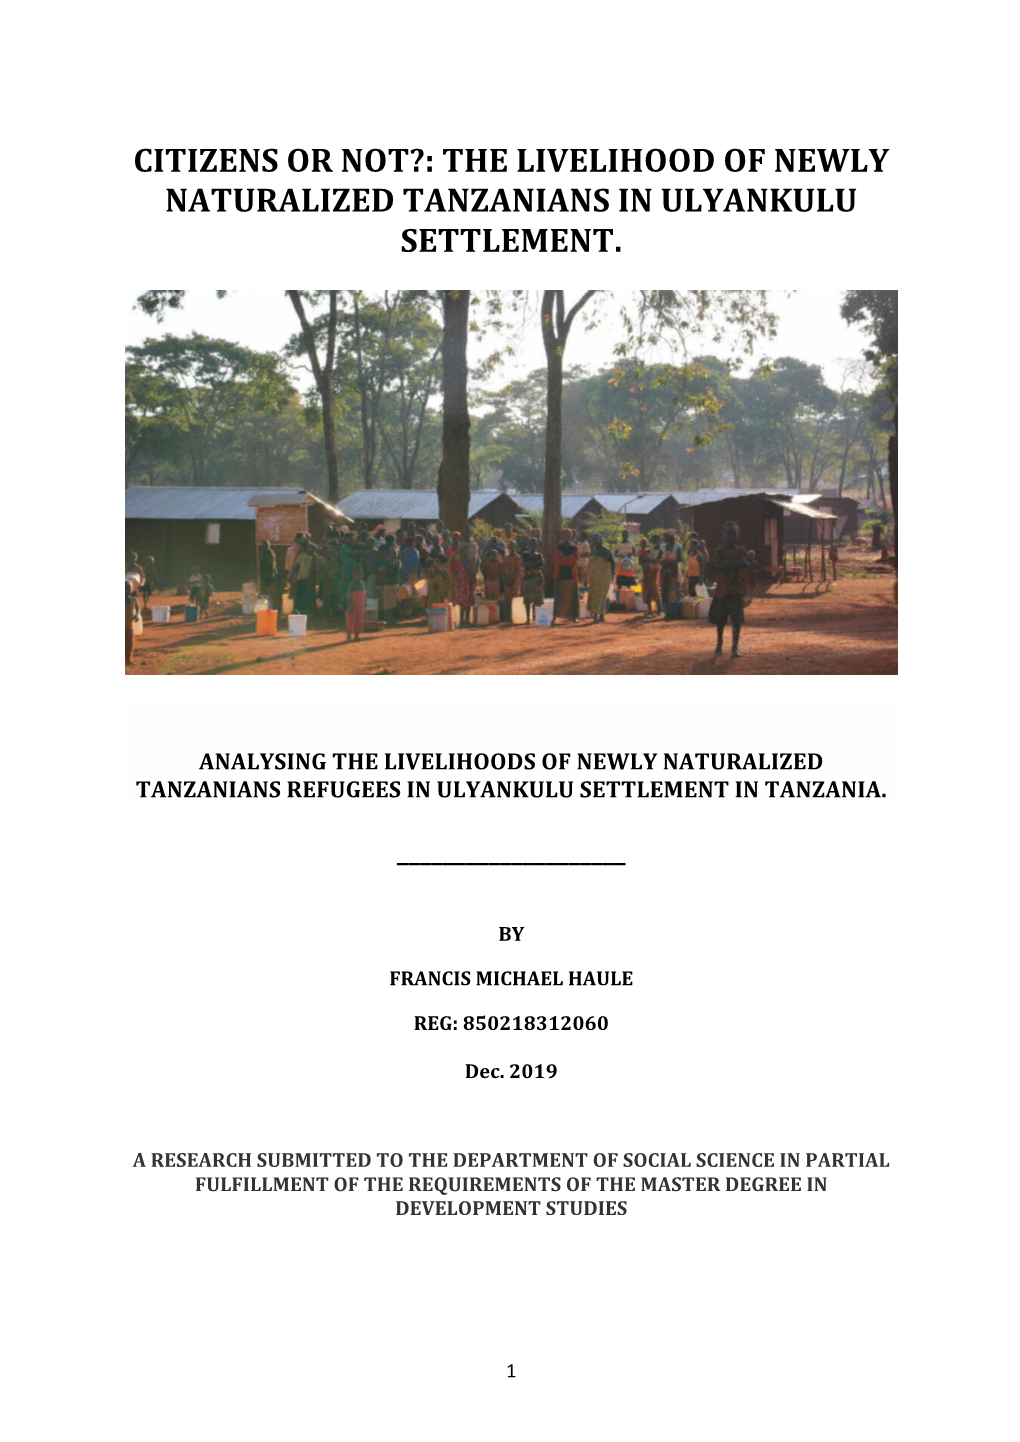 The Livelihood of Newly Naturalized Tanzanians in Ulyankulu Settlement